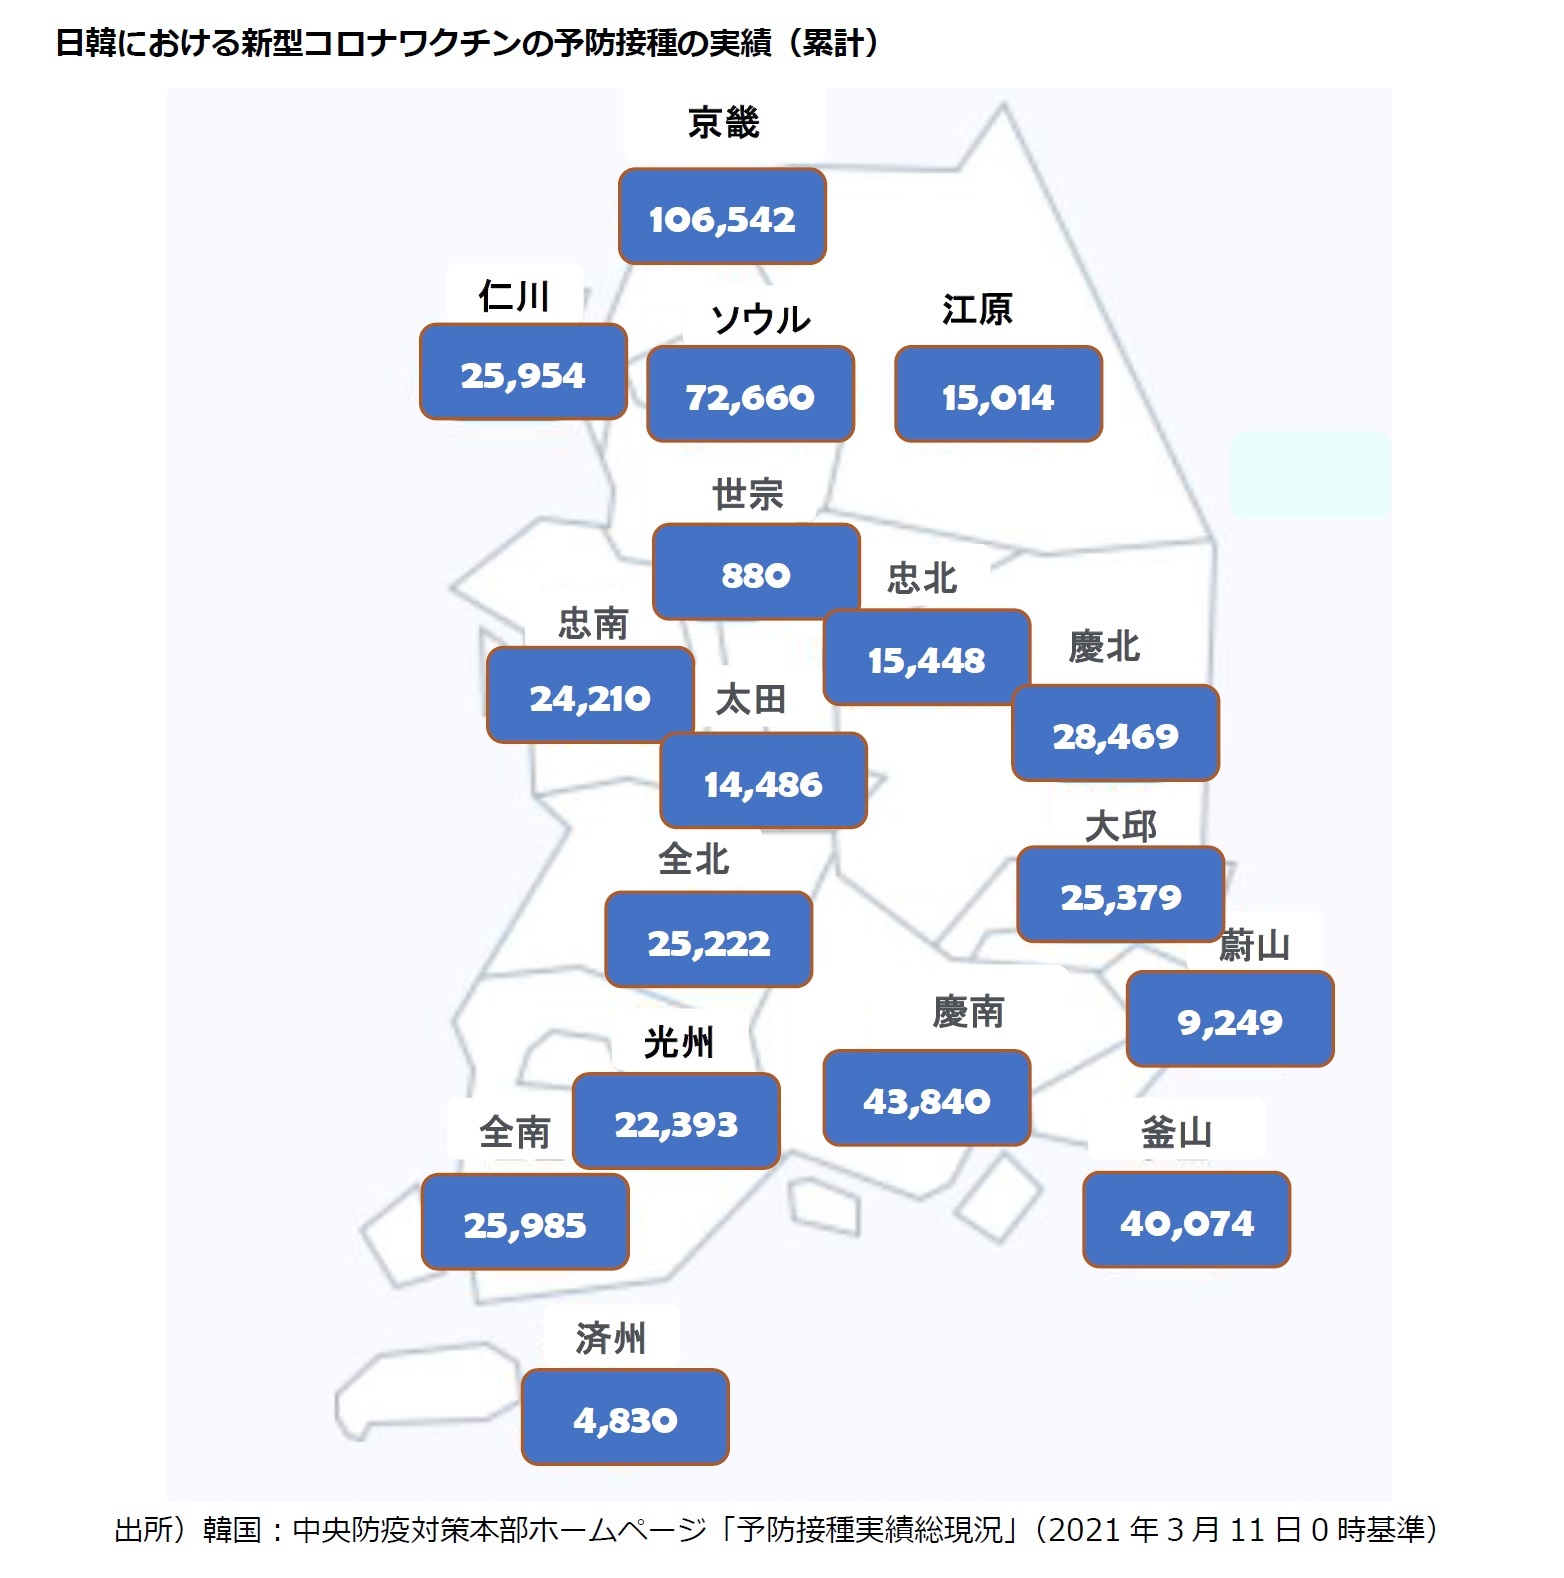 日韓における新型コロナワクチンの予防接種の実績（累計）